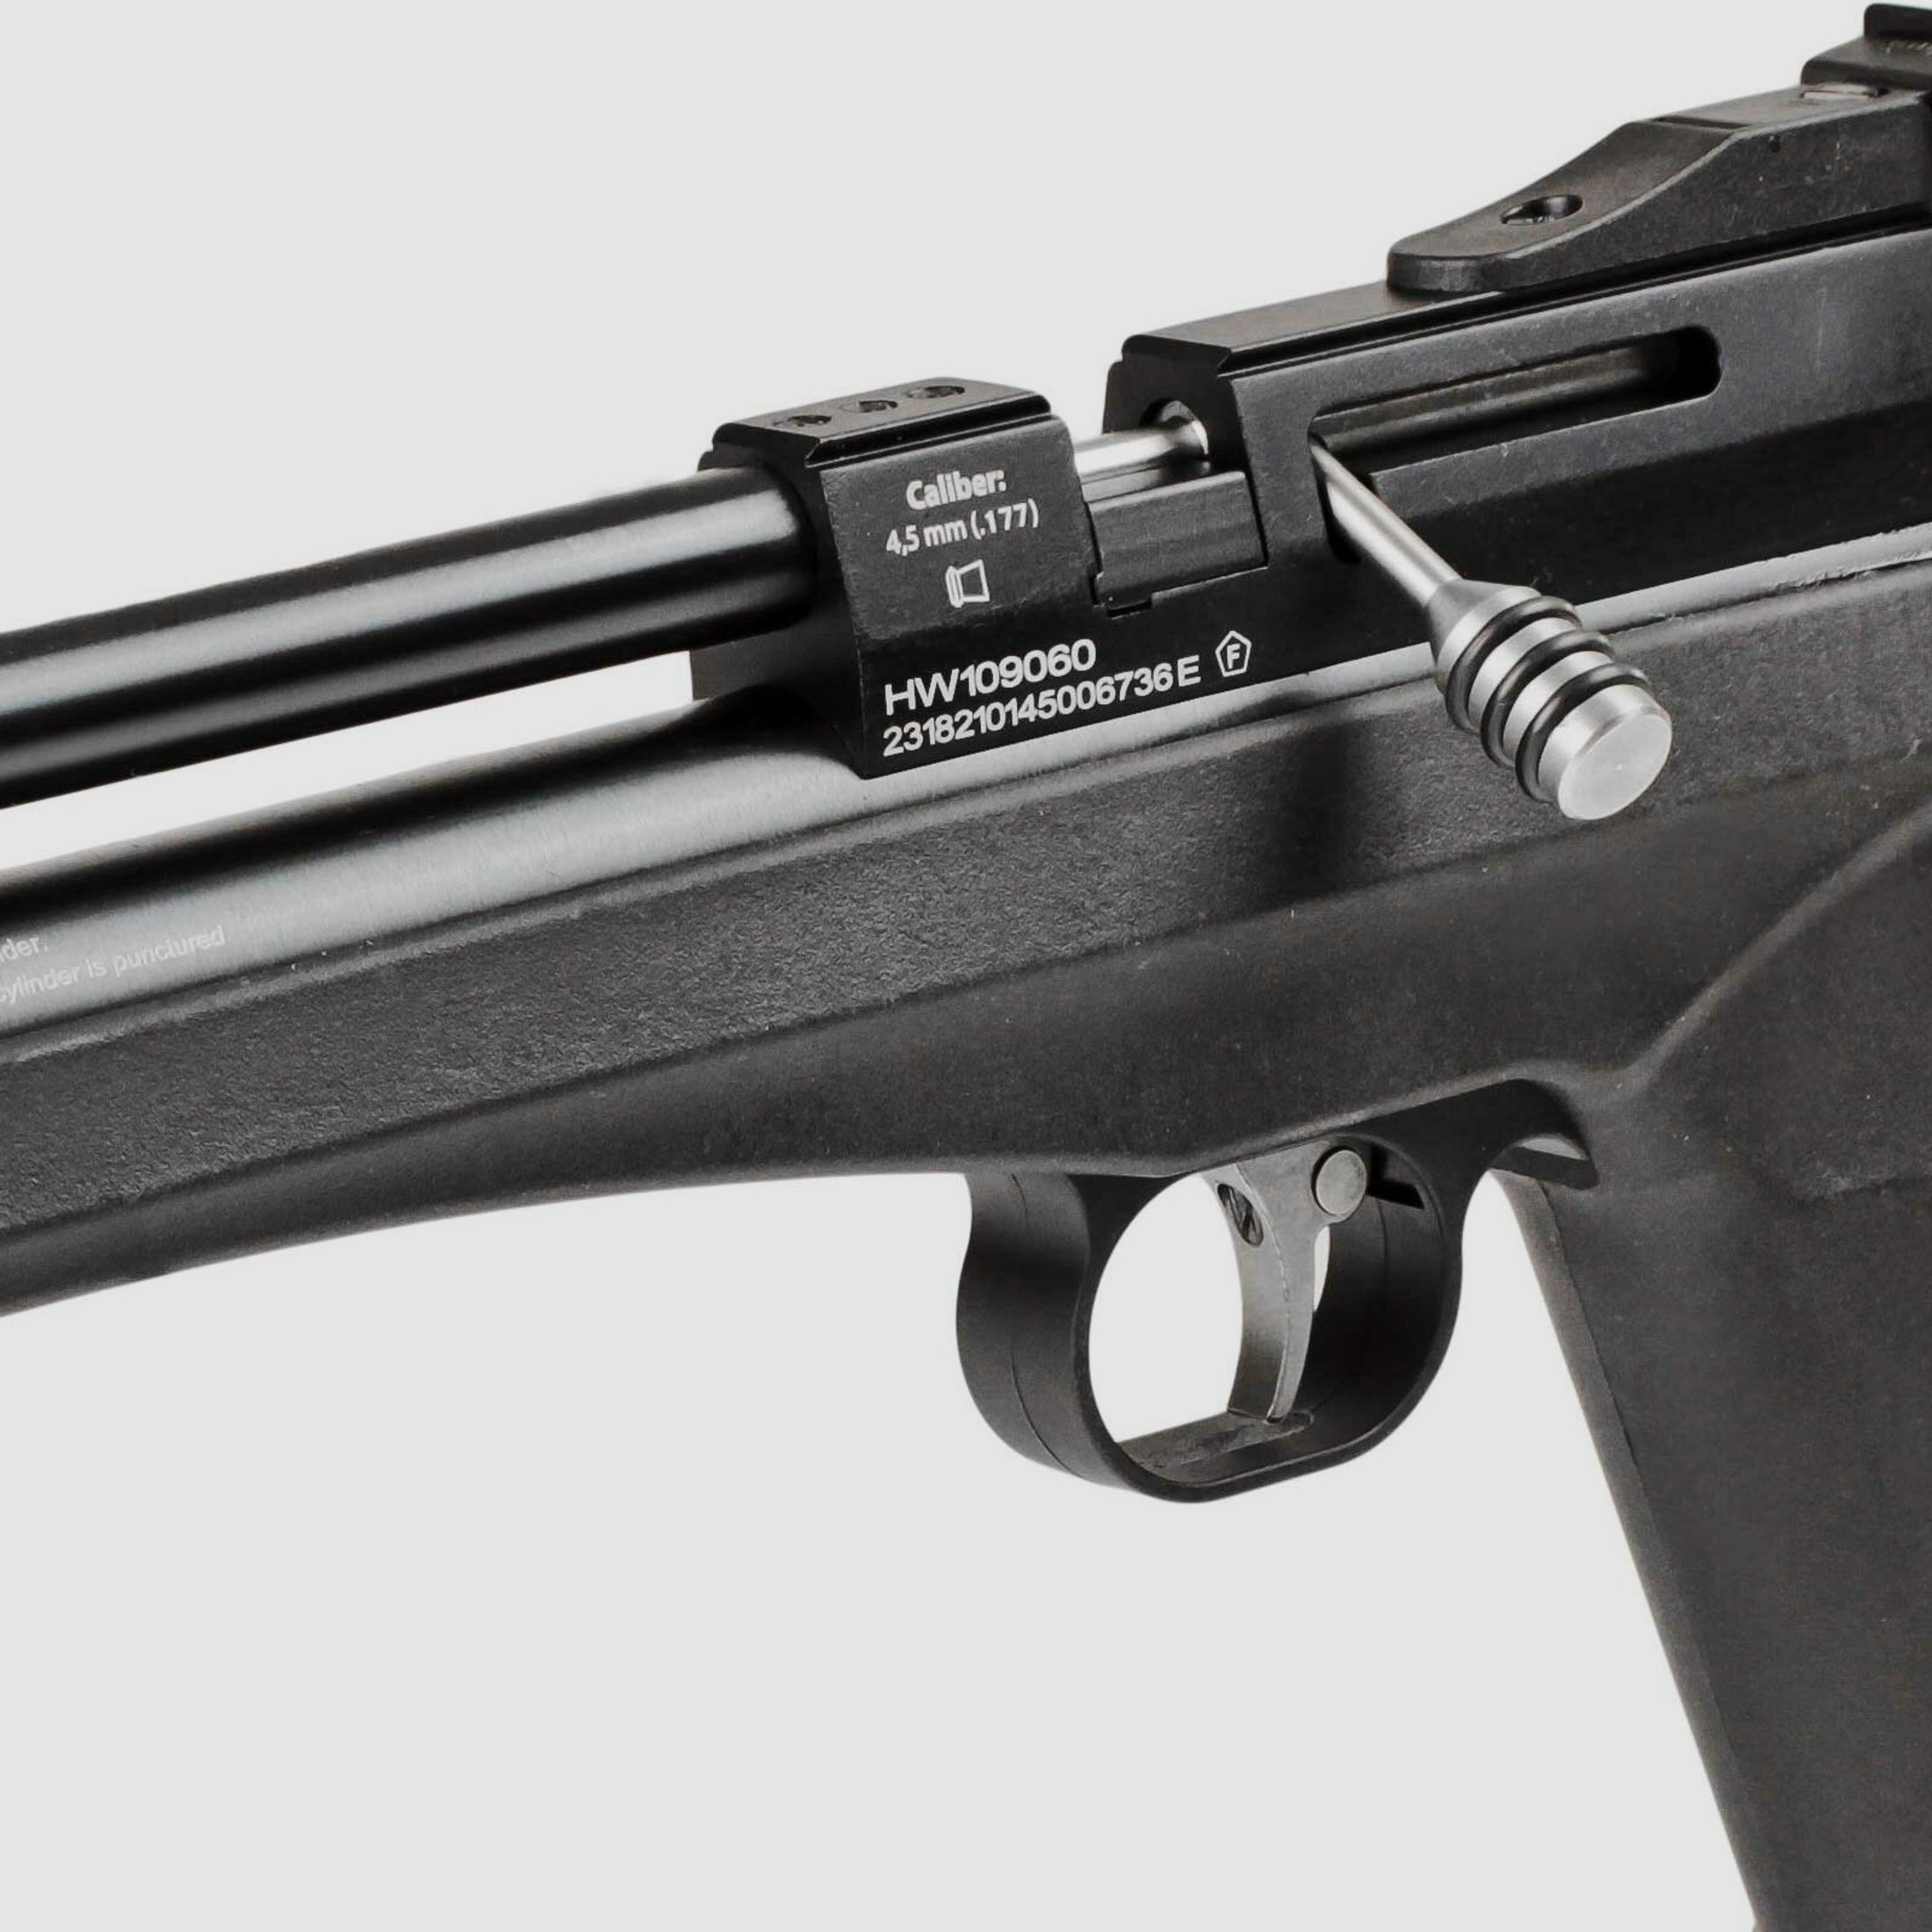 SET Diana Chaser Pistol Co2 Pistole 4,5 mm Diabolo (P18)